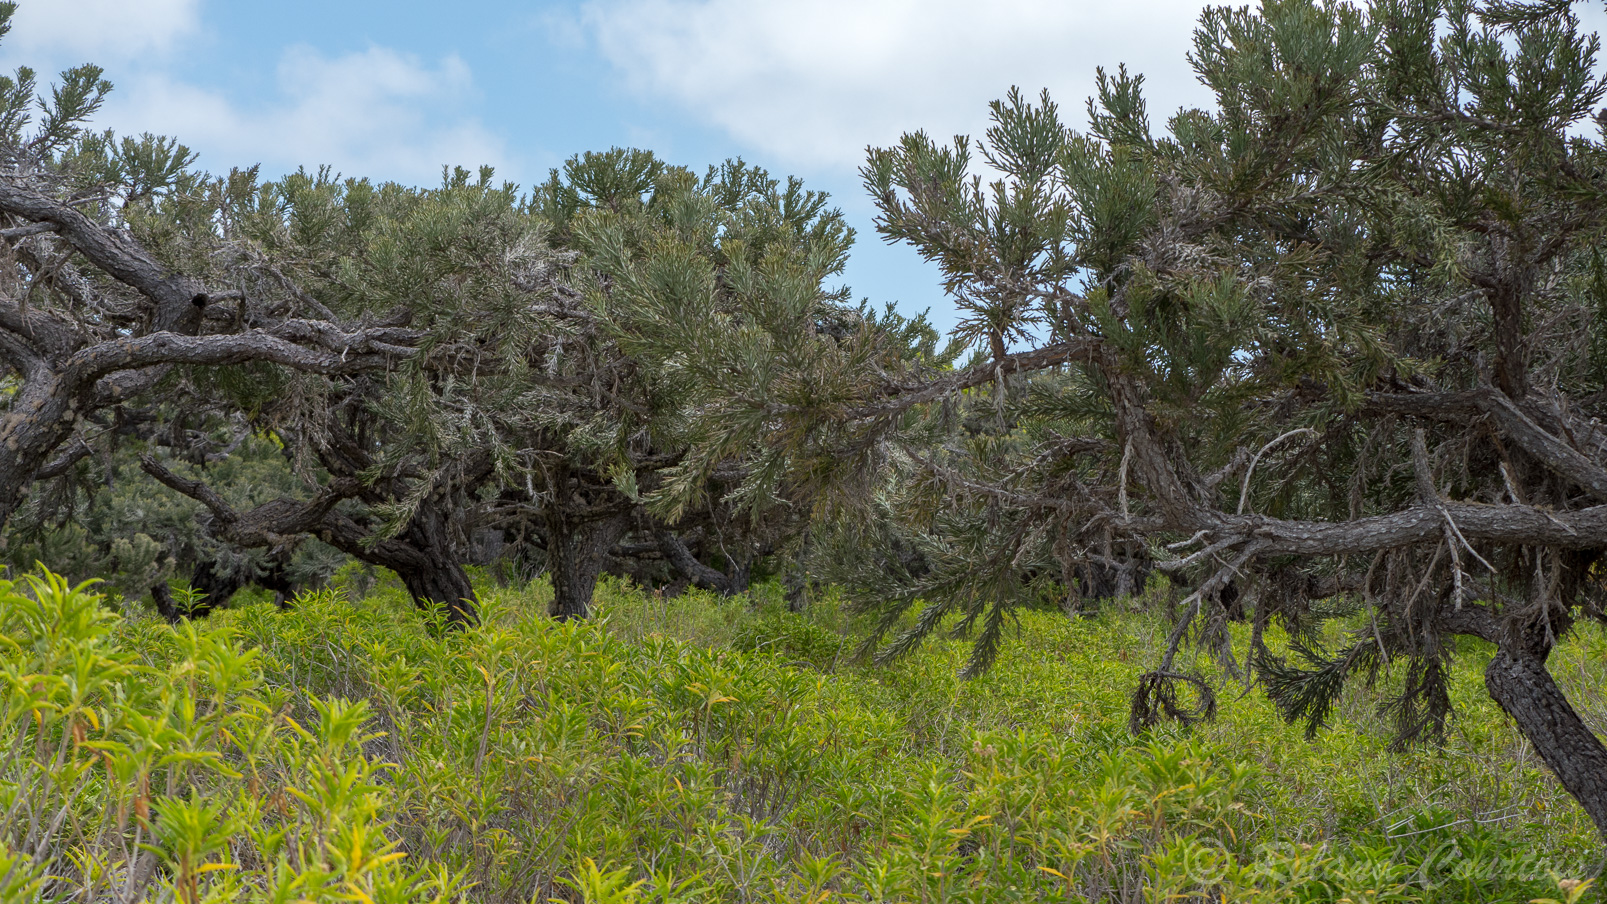 Des euphorbes arborescents  dominent des buissons d'arina.